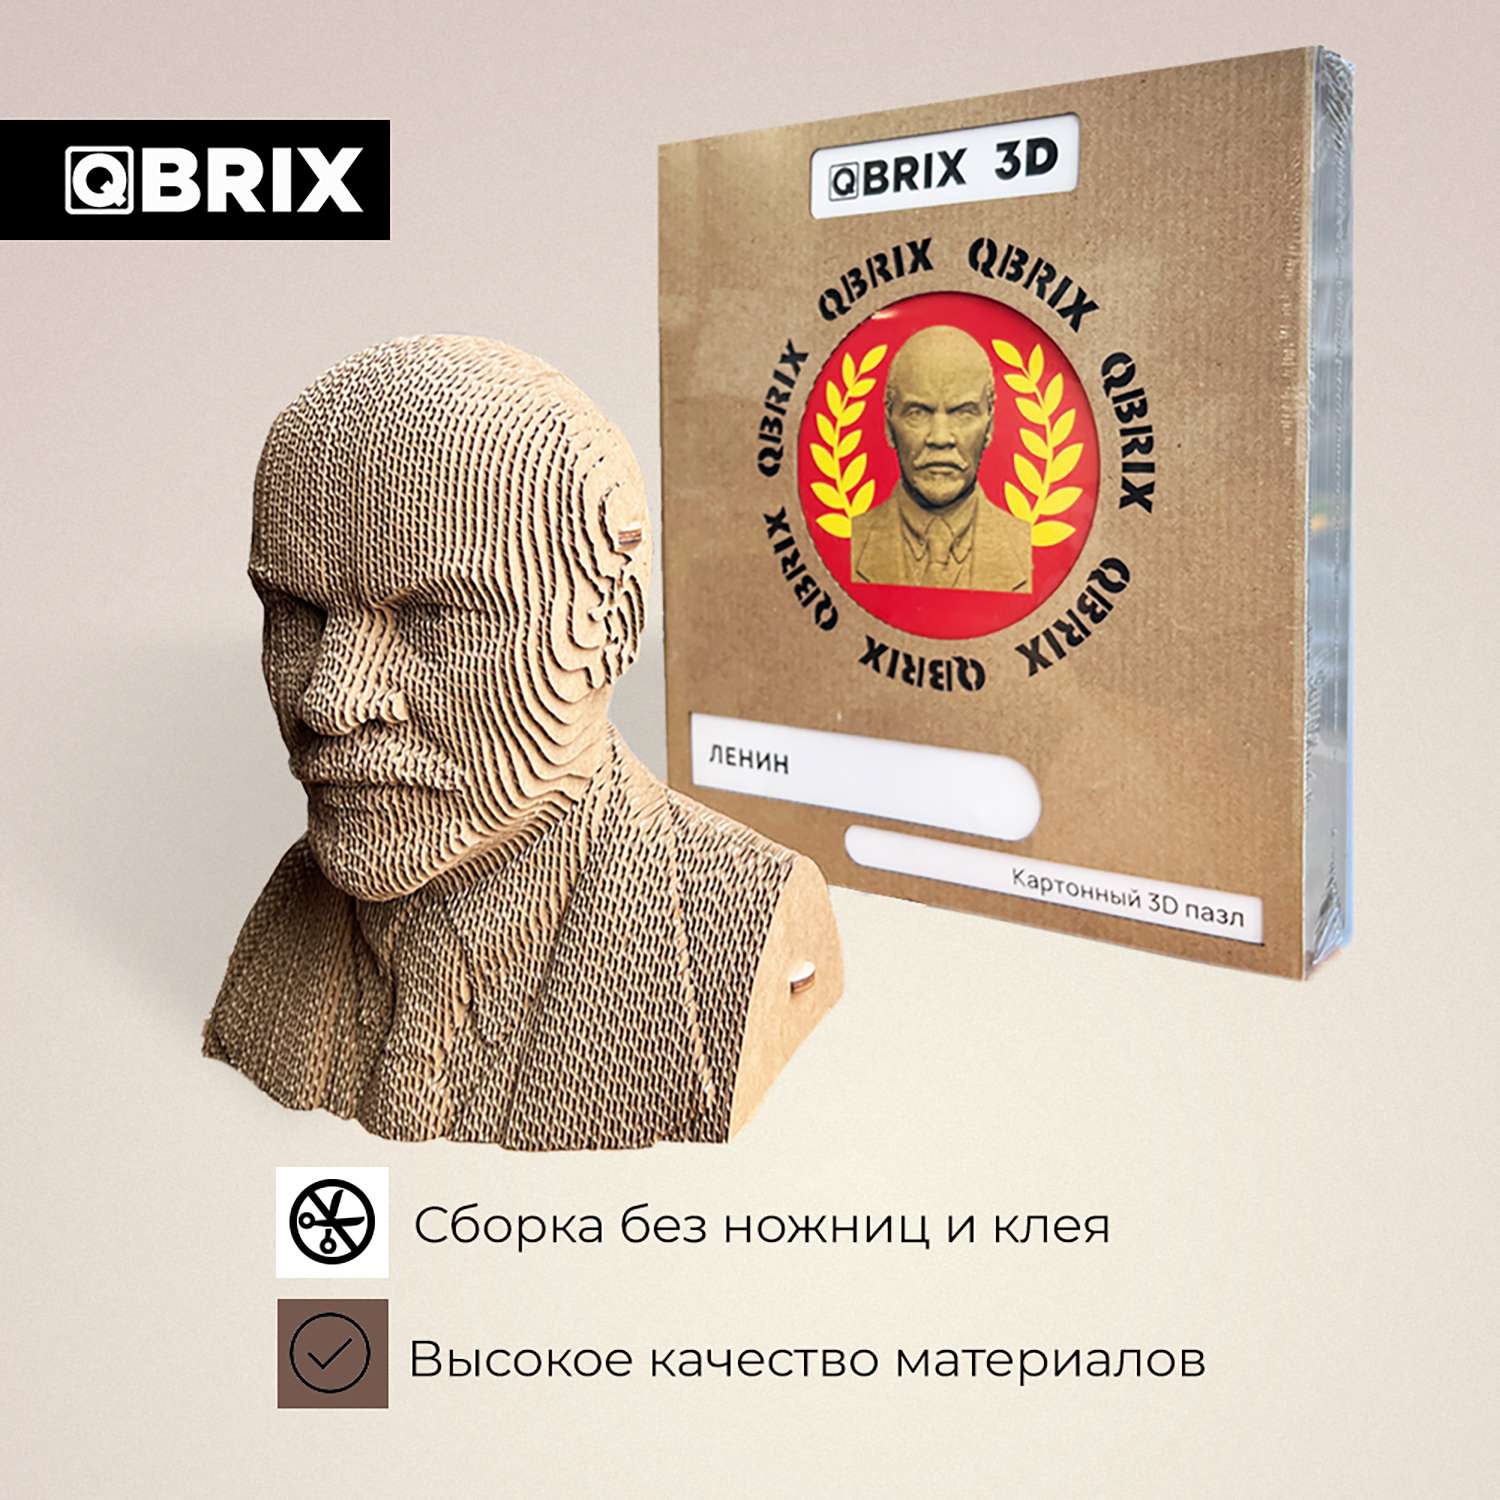 Конструктор QBRIX 3D картонный Ленин 20031 20031 - фото 3